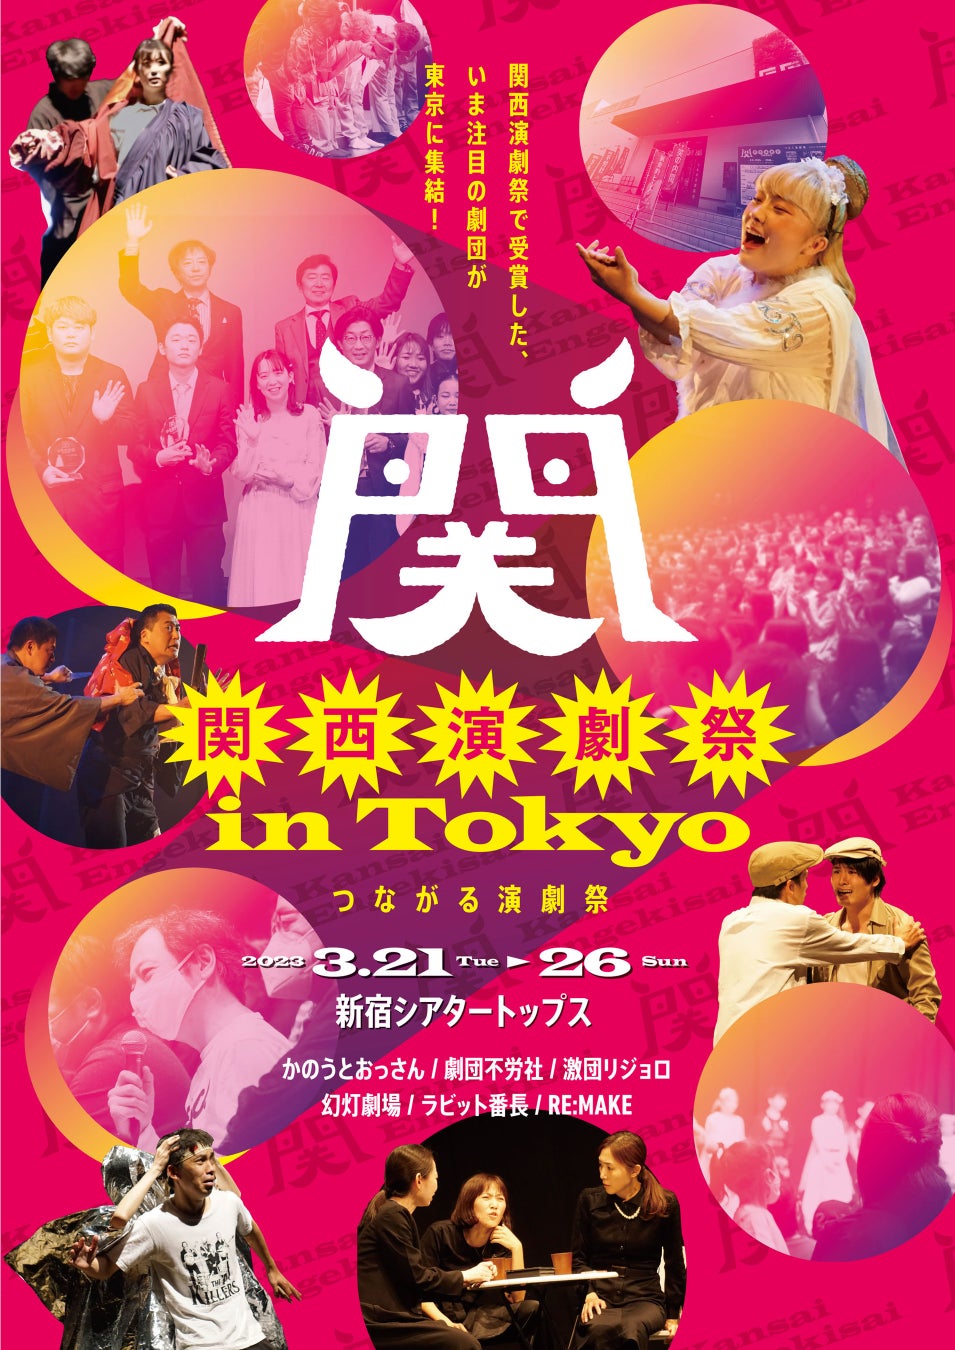 関西演劇祭 in Tokyoが3月21日(火)からスタート&関西演劇祭2023参加劇団募集開始のお知らせ